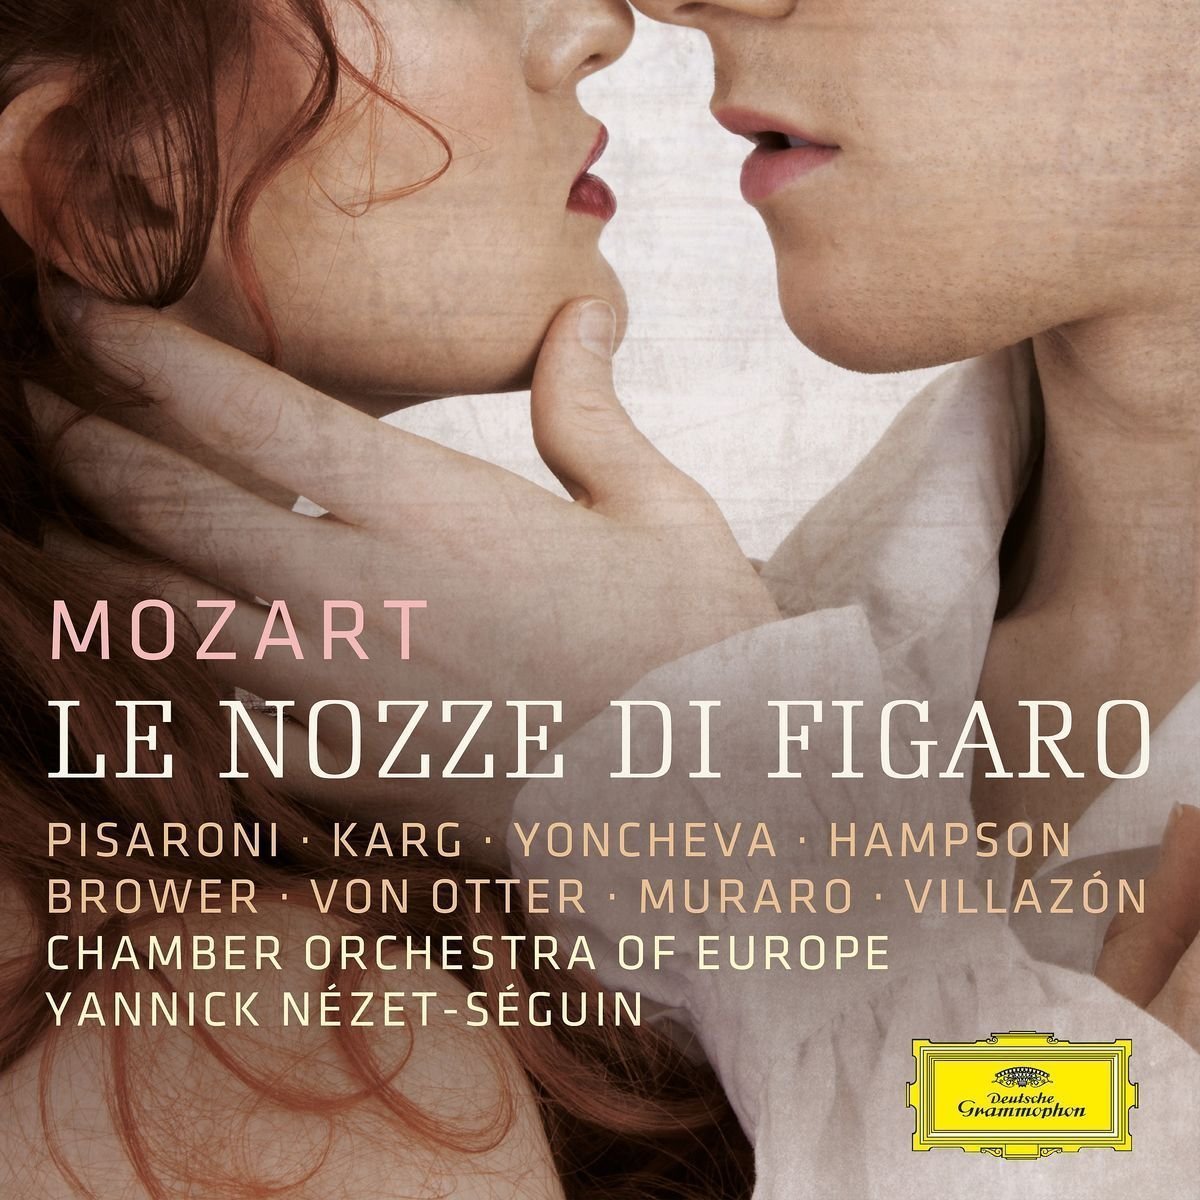 Pubblicato  'Le Nozze di Figaro' diretto da Yannick Nézet-Séguin